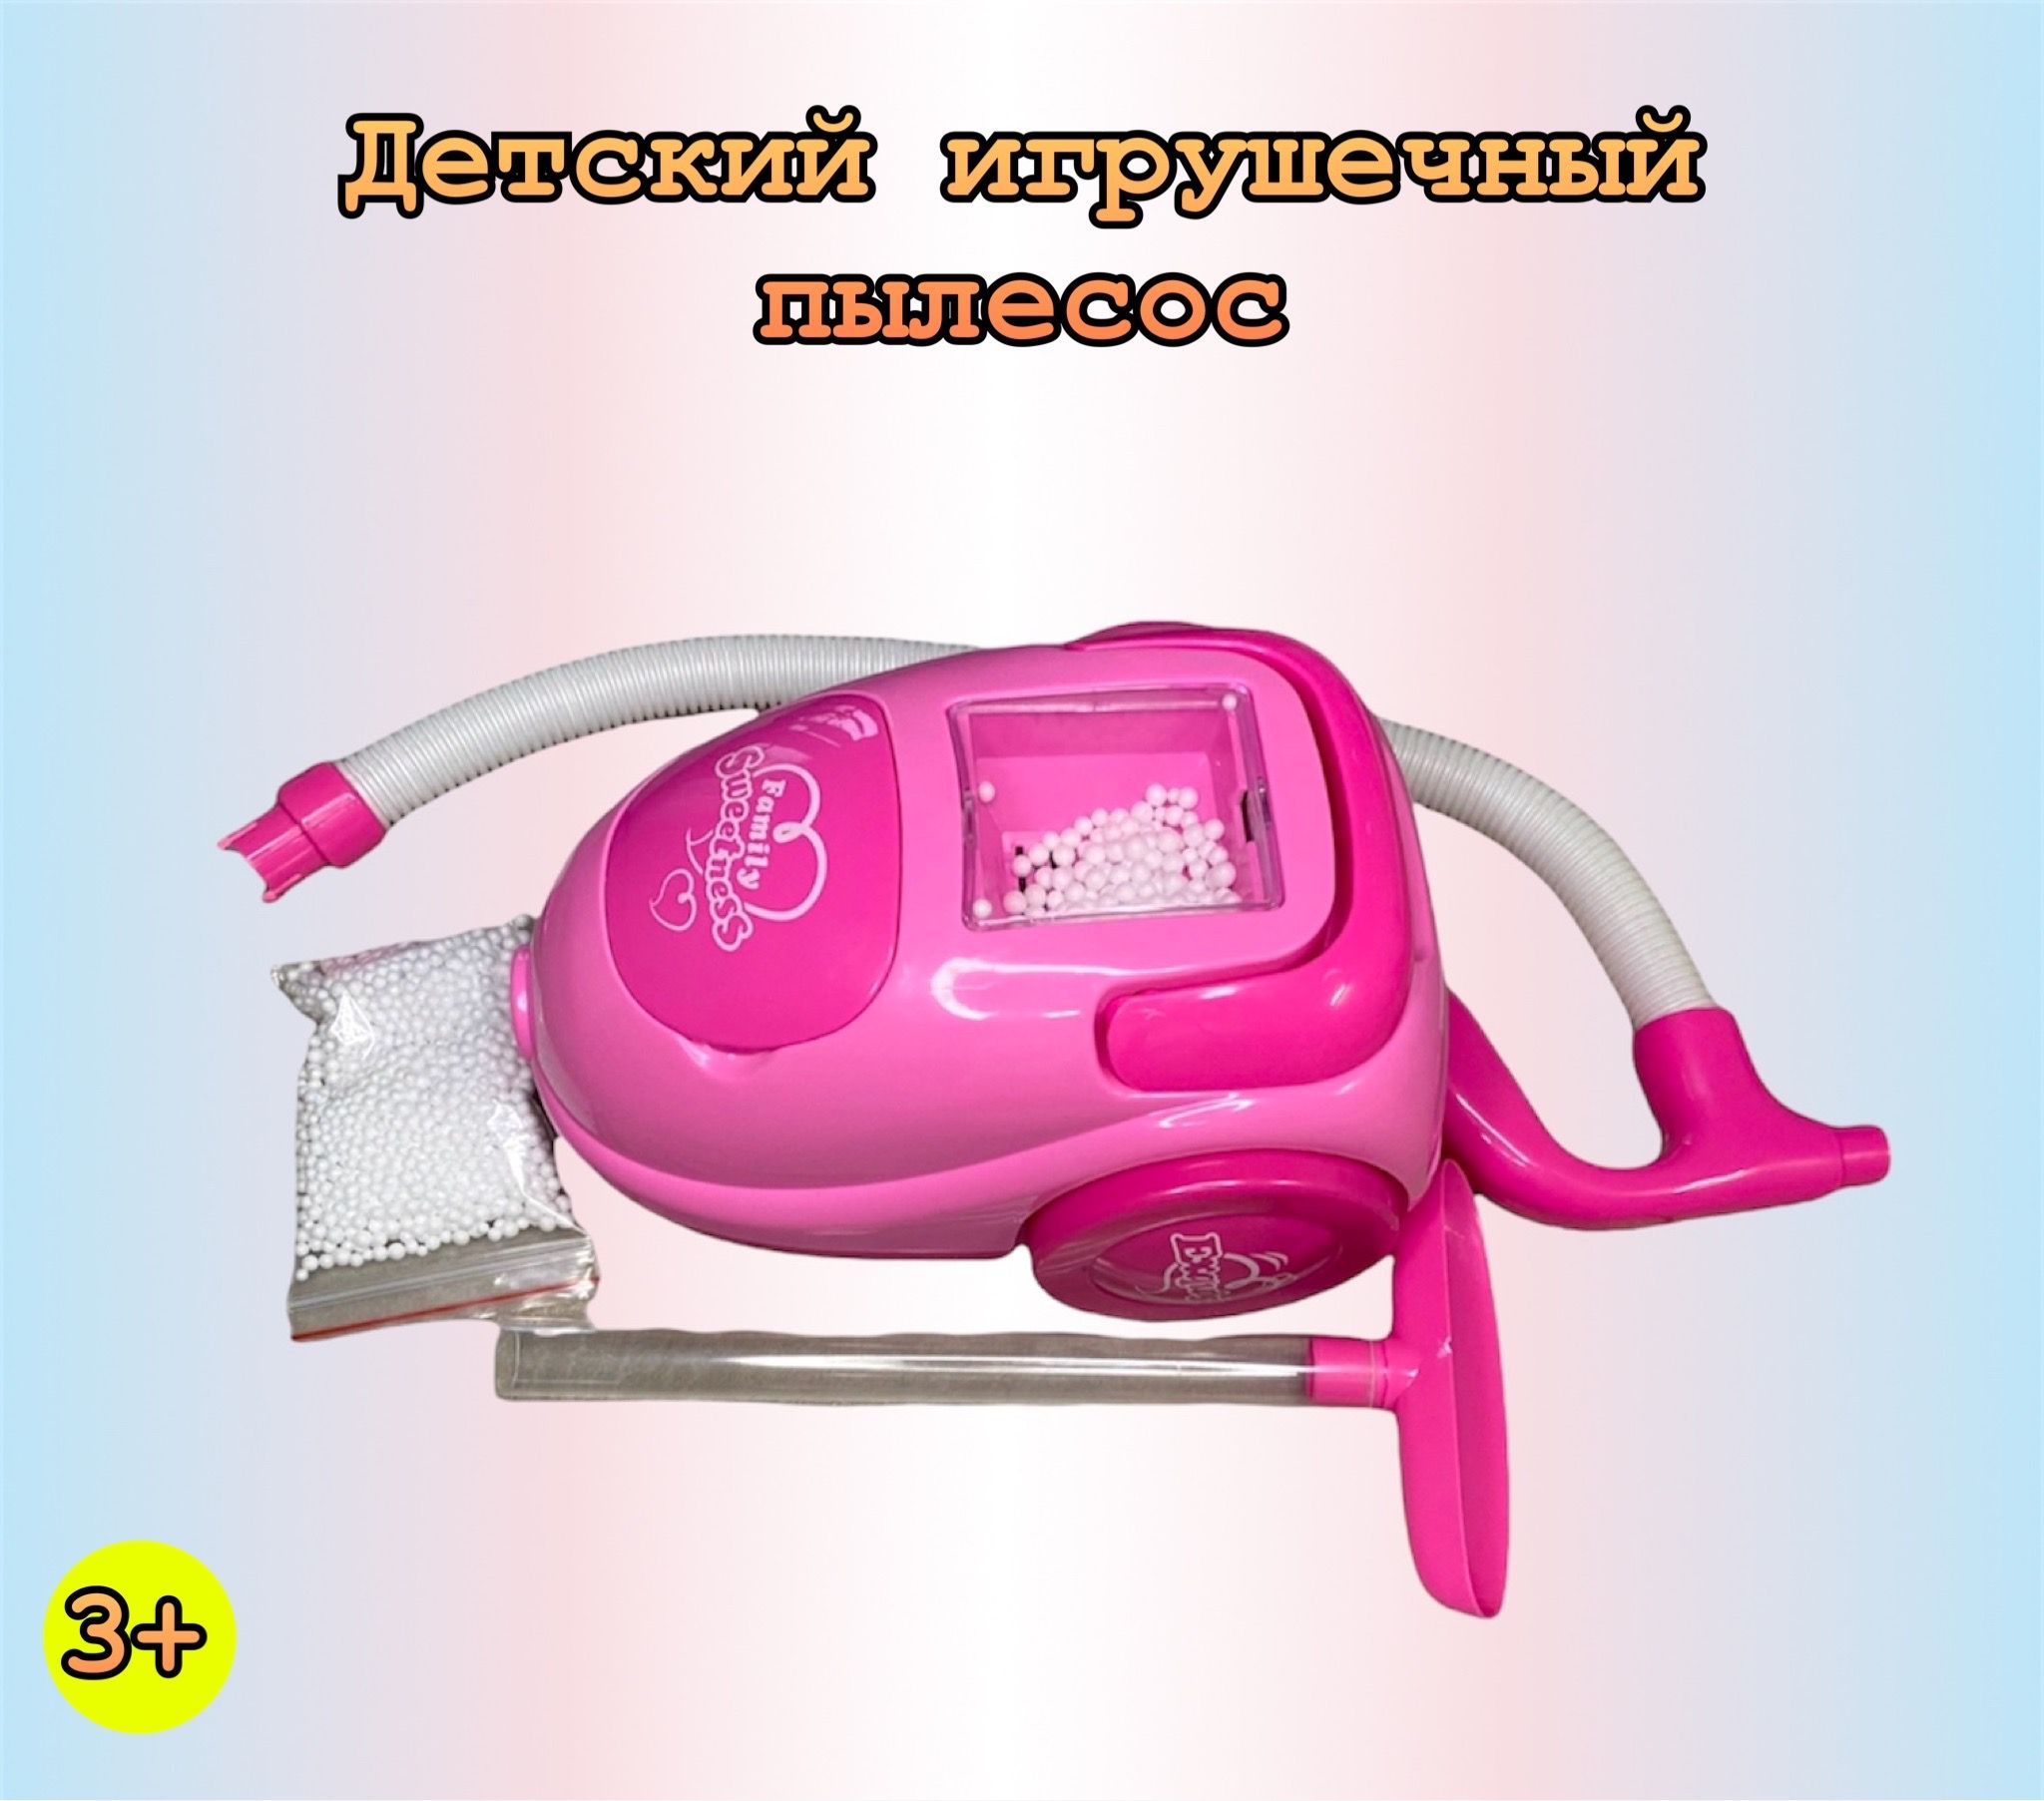 Пылесос игрушечный Panawealth детский, розовый пушистый рюкзак panawealth хагги вагги кисси мисси кисси мисси розовый